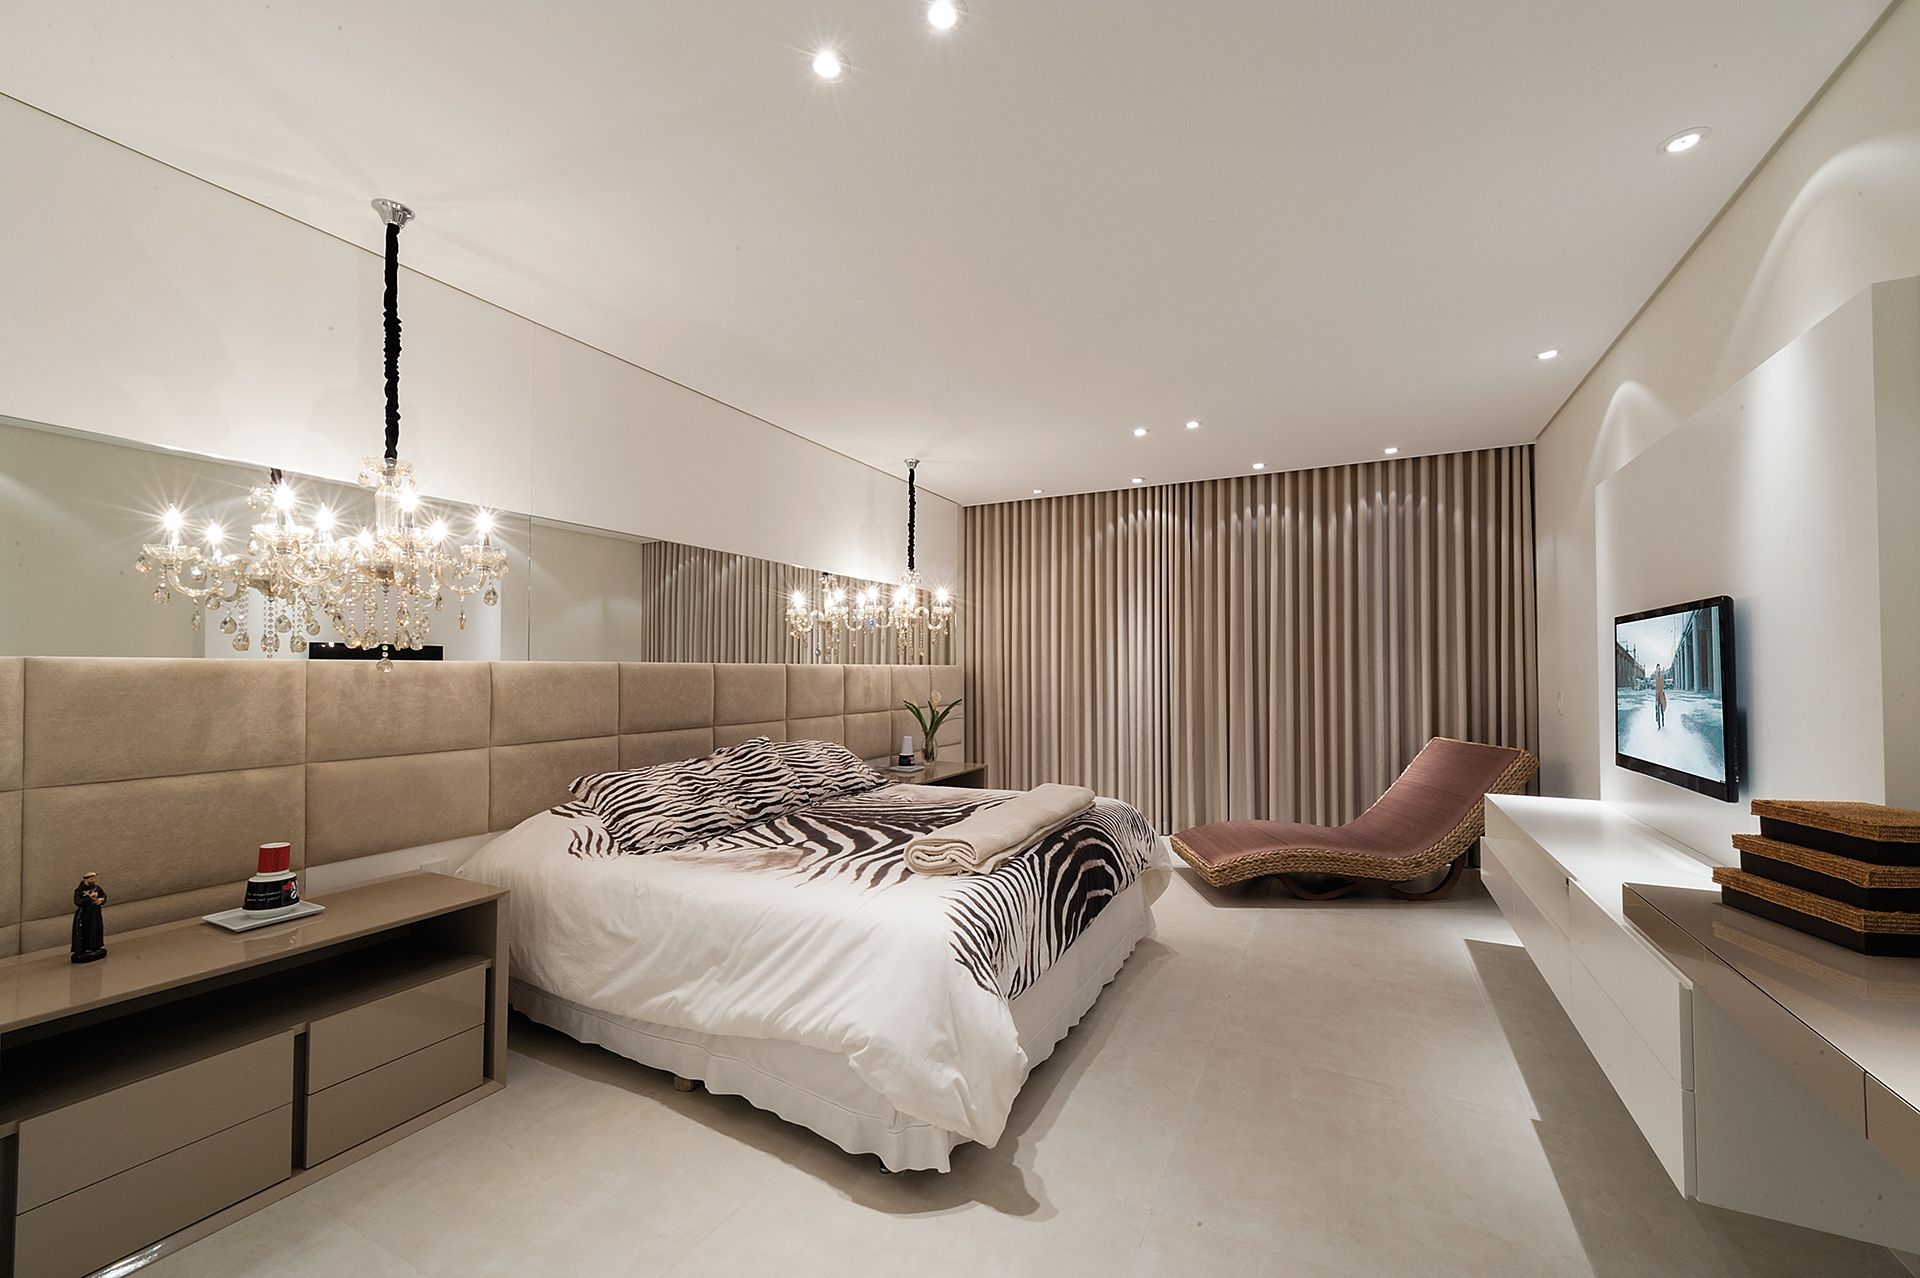 миланская в стиле модерн спальня